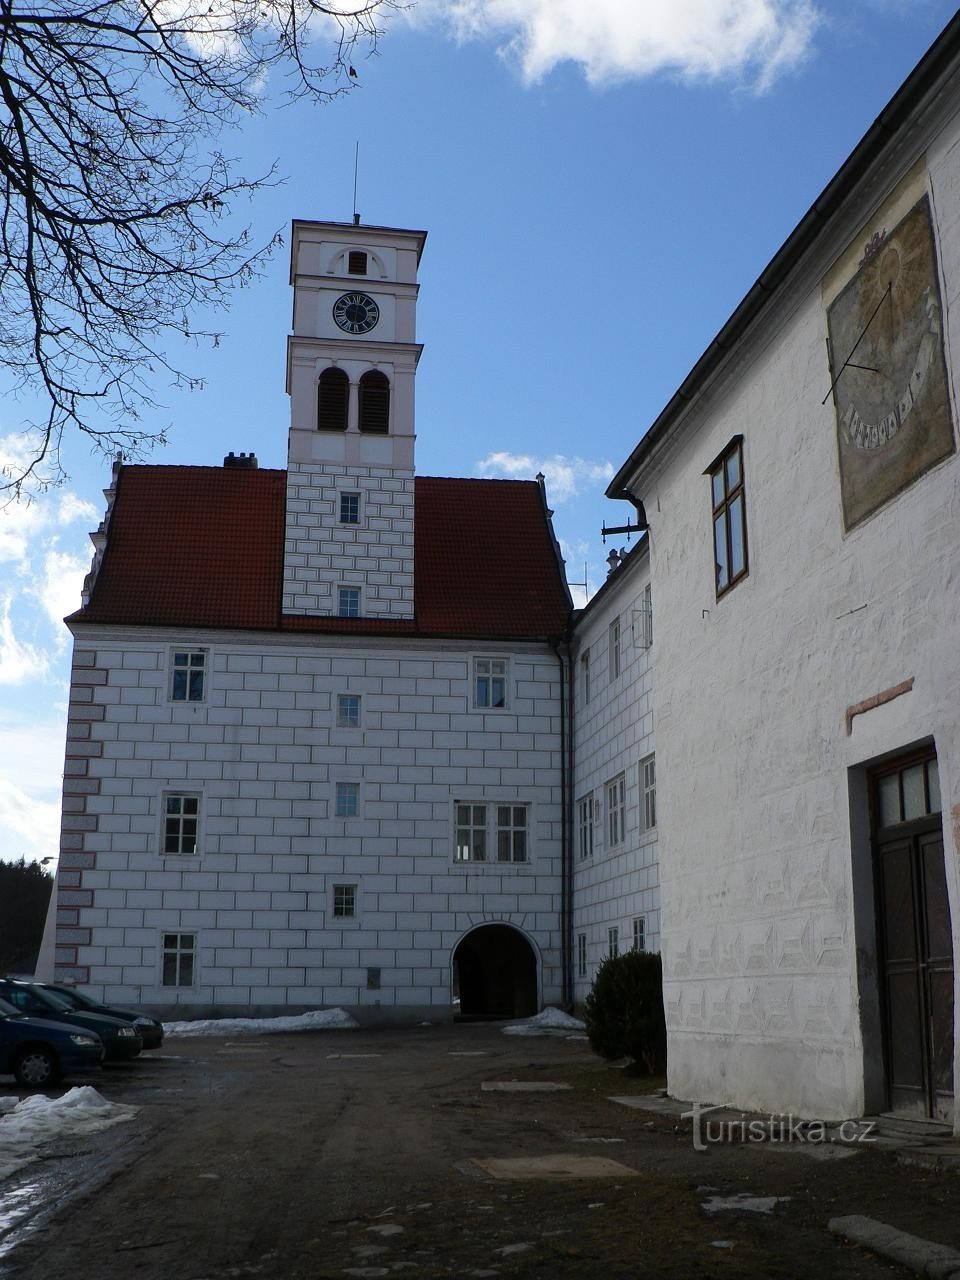 Κάστρο Žichovice, κτίριο με πύργο